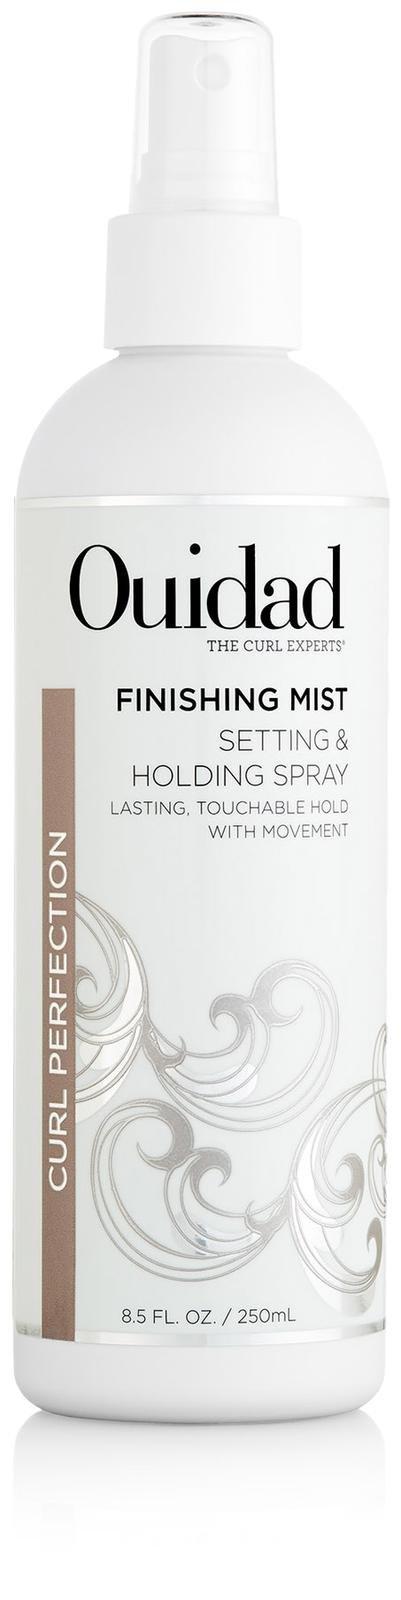 Ouidad Styling Finishing Mist - 8.5 Oz